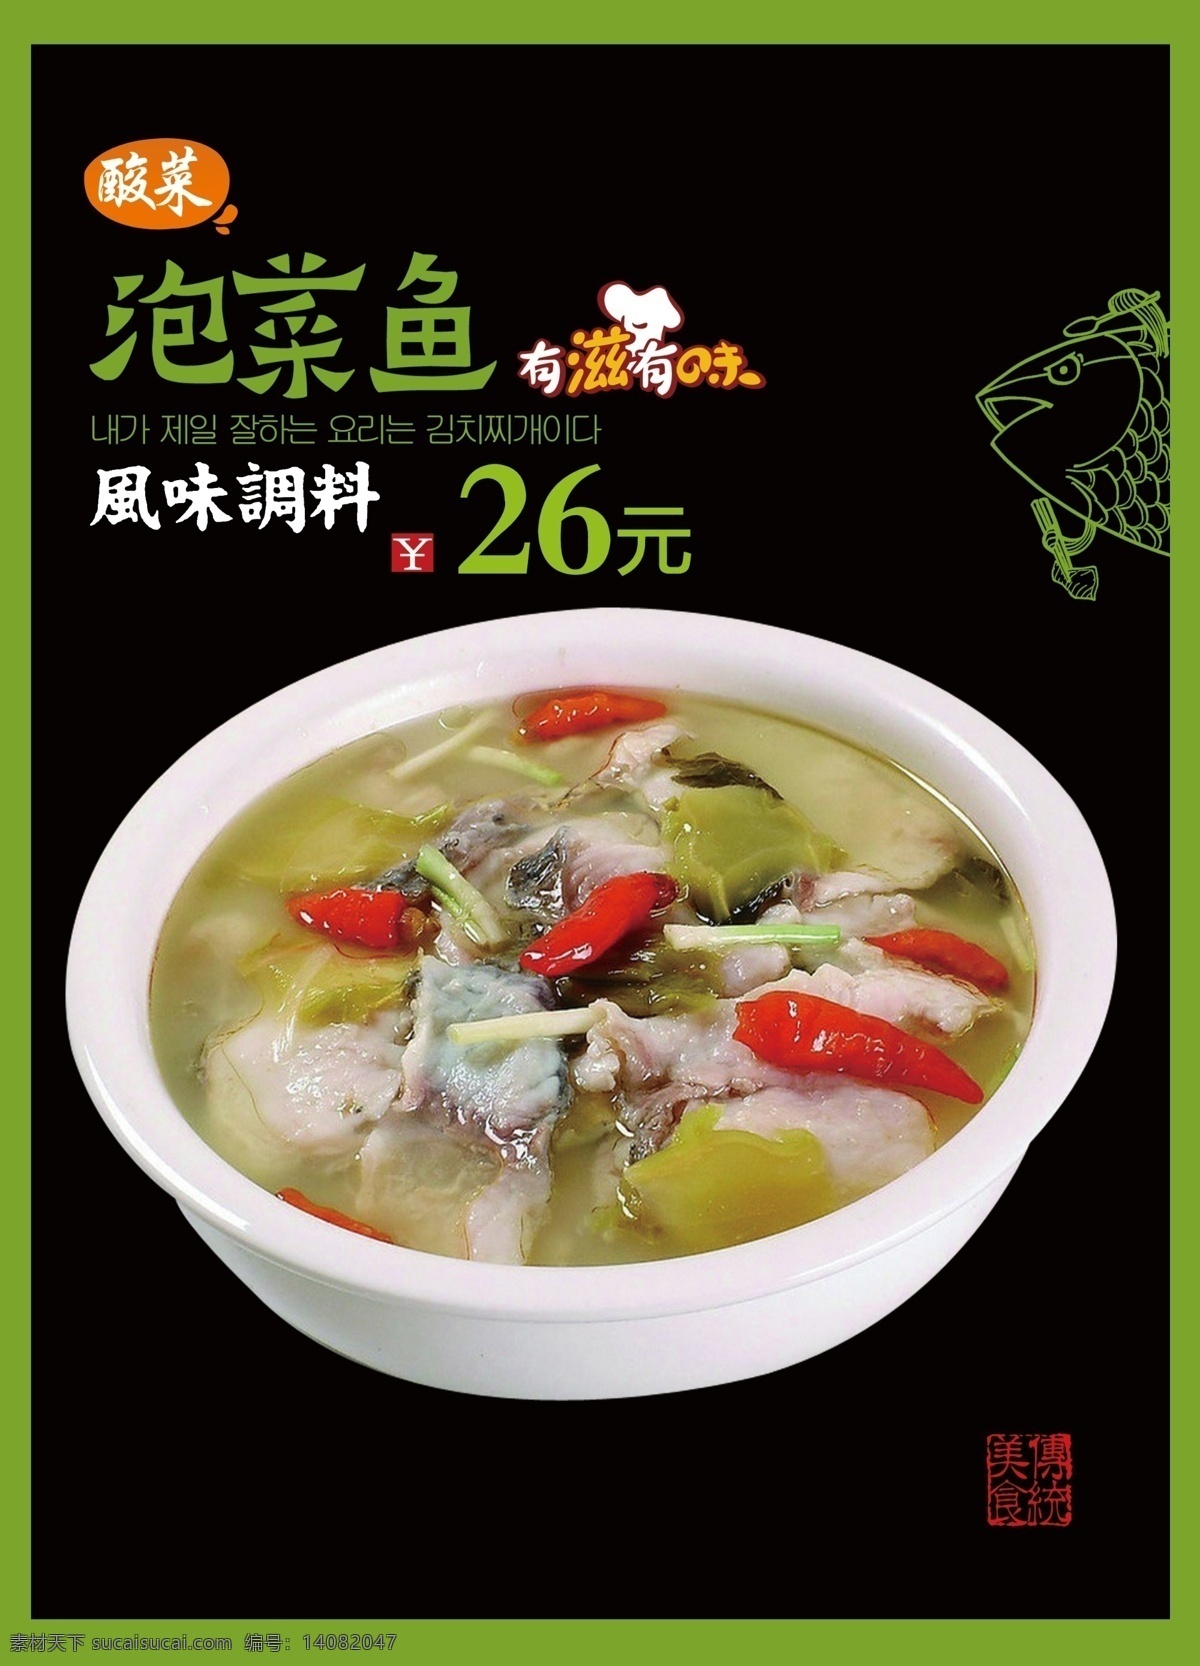 泡菜鱼 海报 例牌 价格牌 菜品形象牌 招贴 餐饮 酒店 酸菜鱼